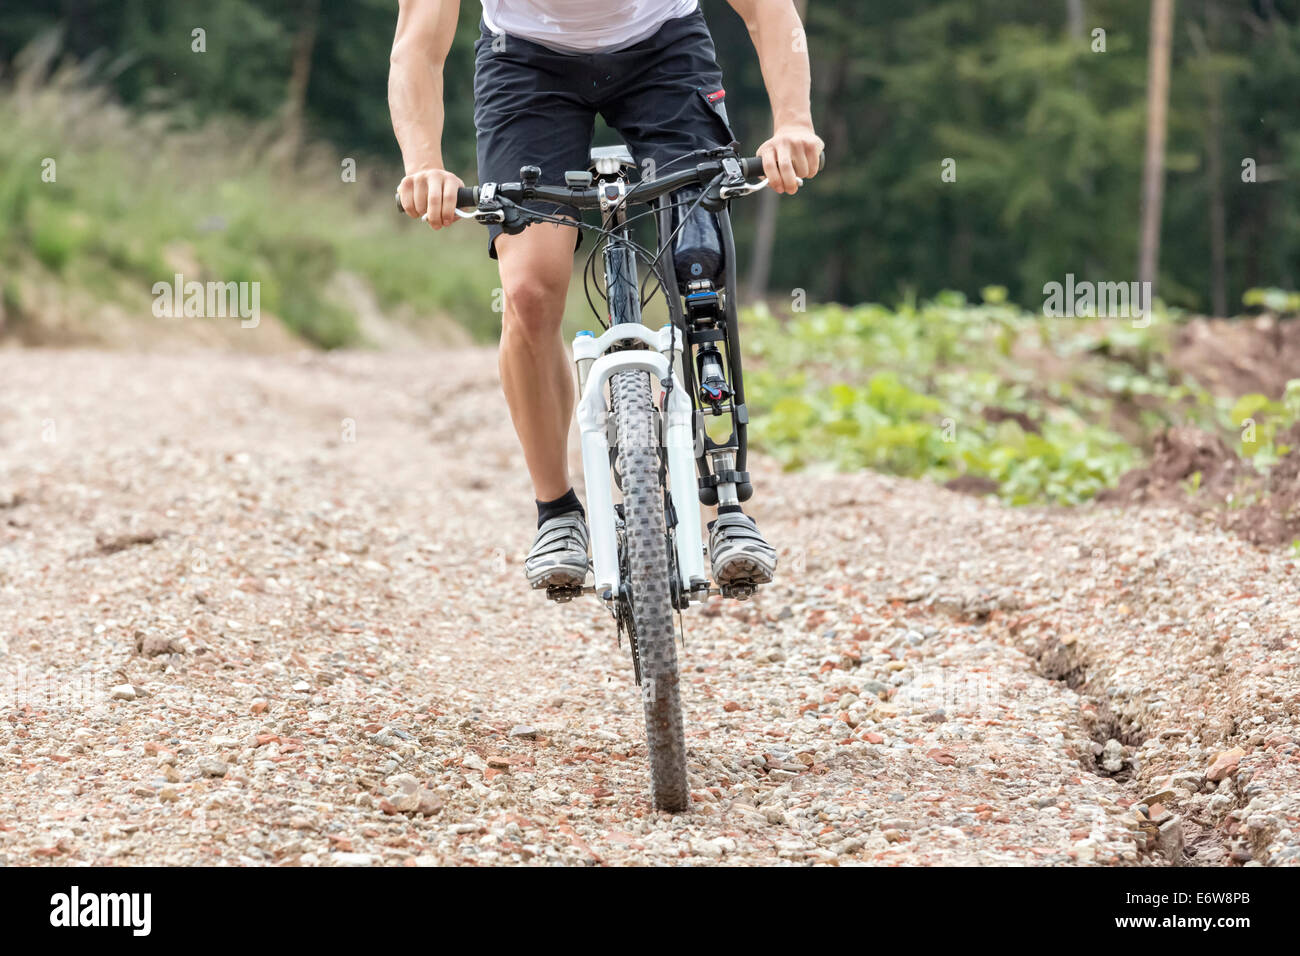 Mountain bike rider avec prothèse de jambe conduit une piste de gravier Banque D'Images